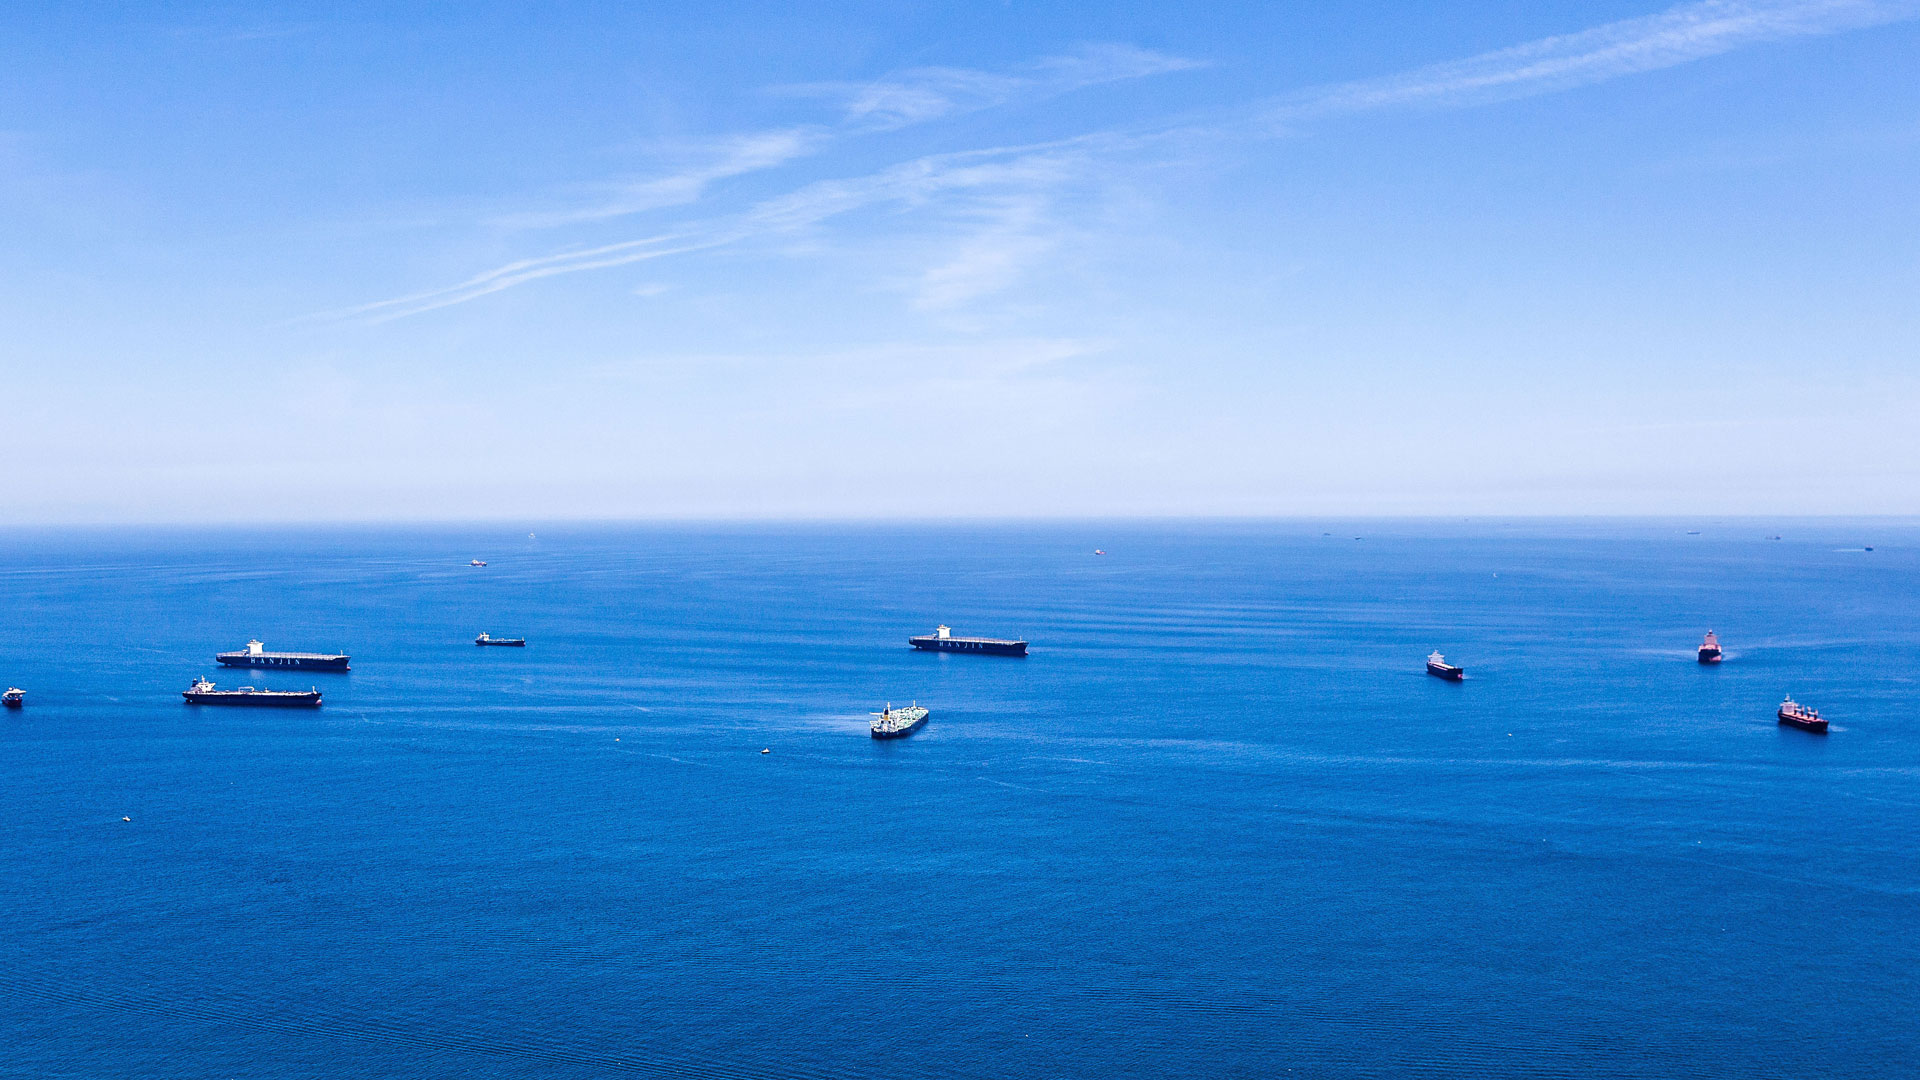 mehrere Handelsschiffe auf dem offenen Meer vor Gibraltar. | picture alliance / pressefoto_ko